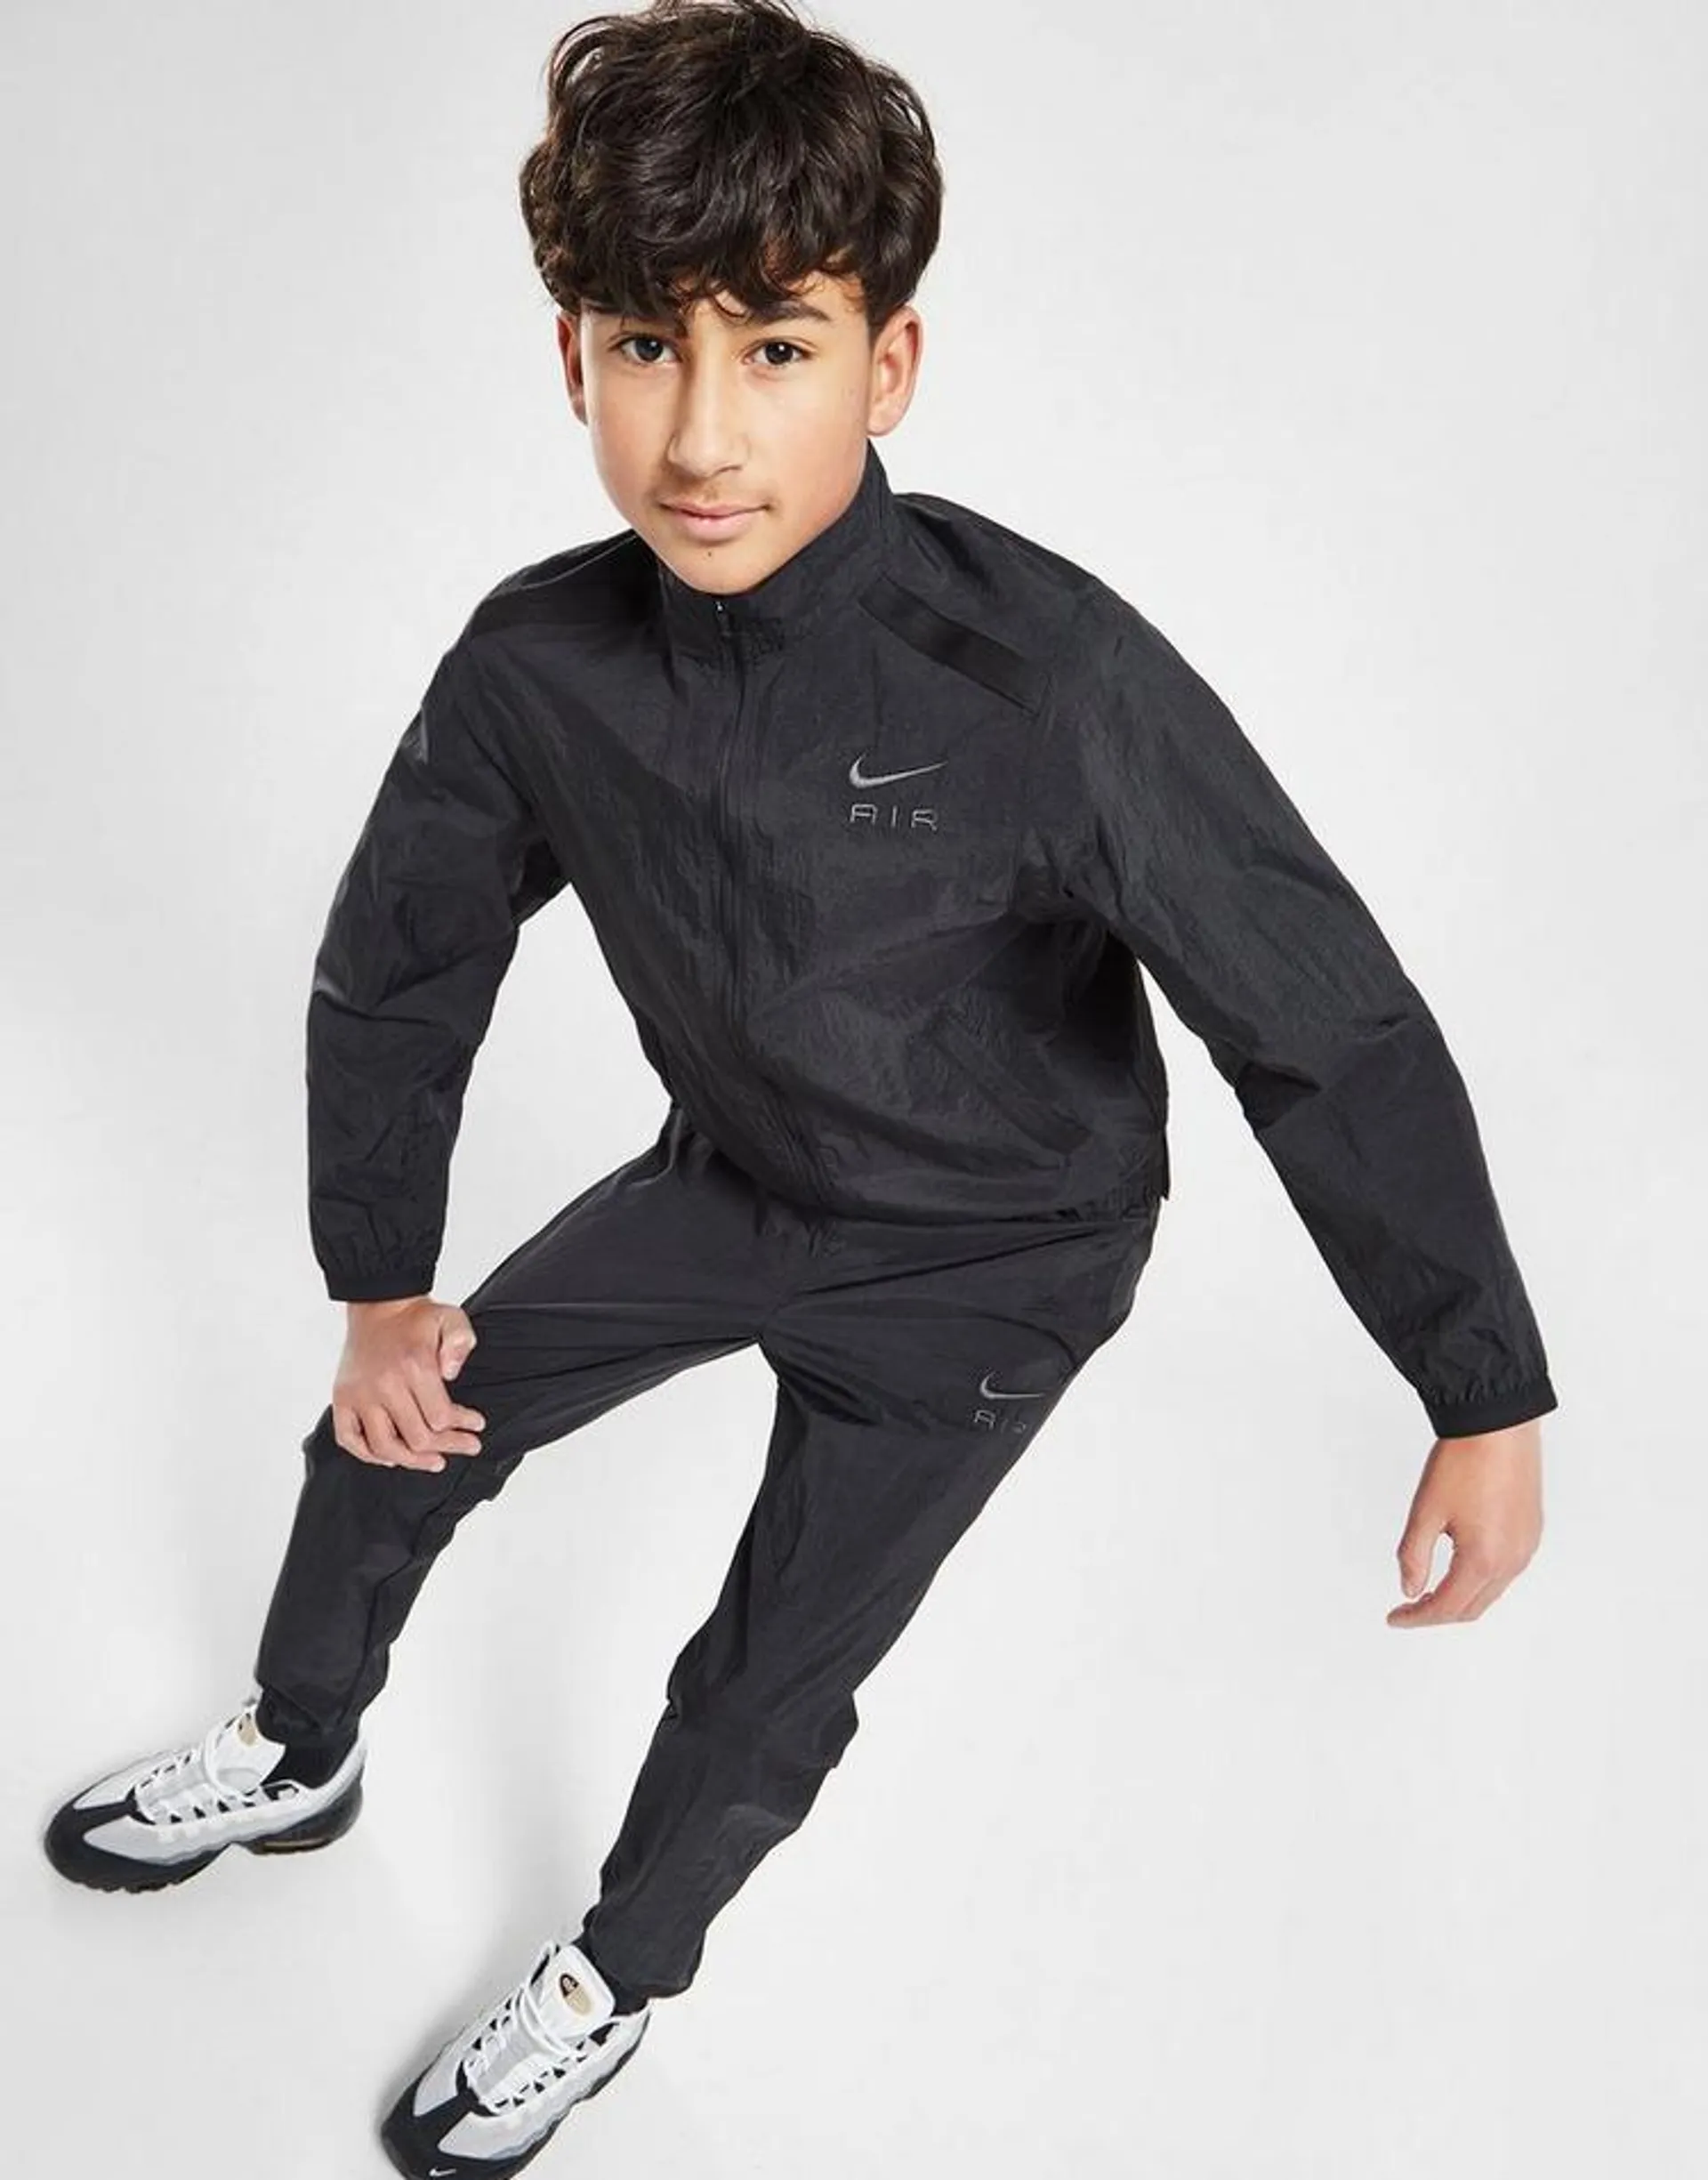 Nike Air Tracksuit Junior